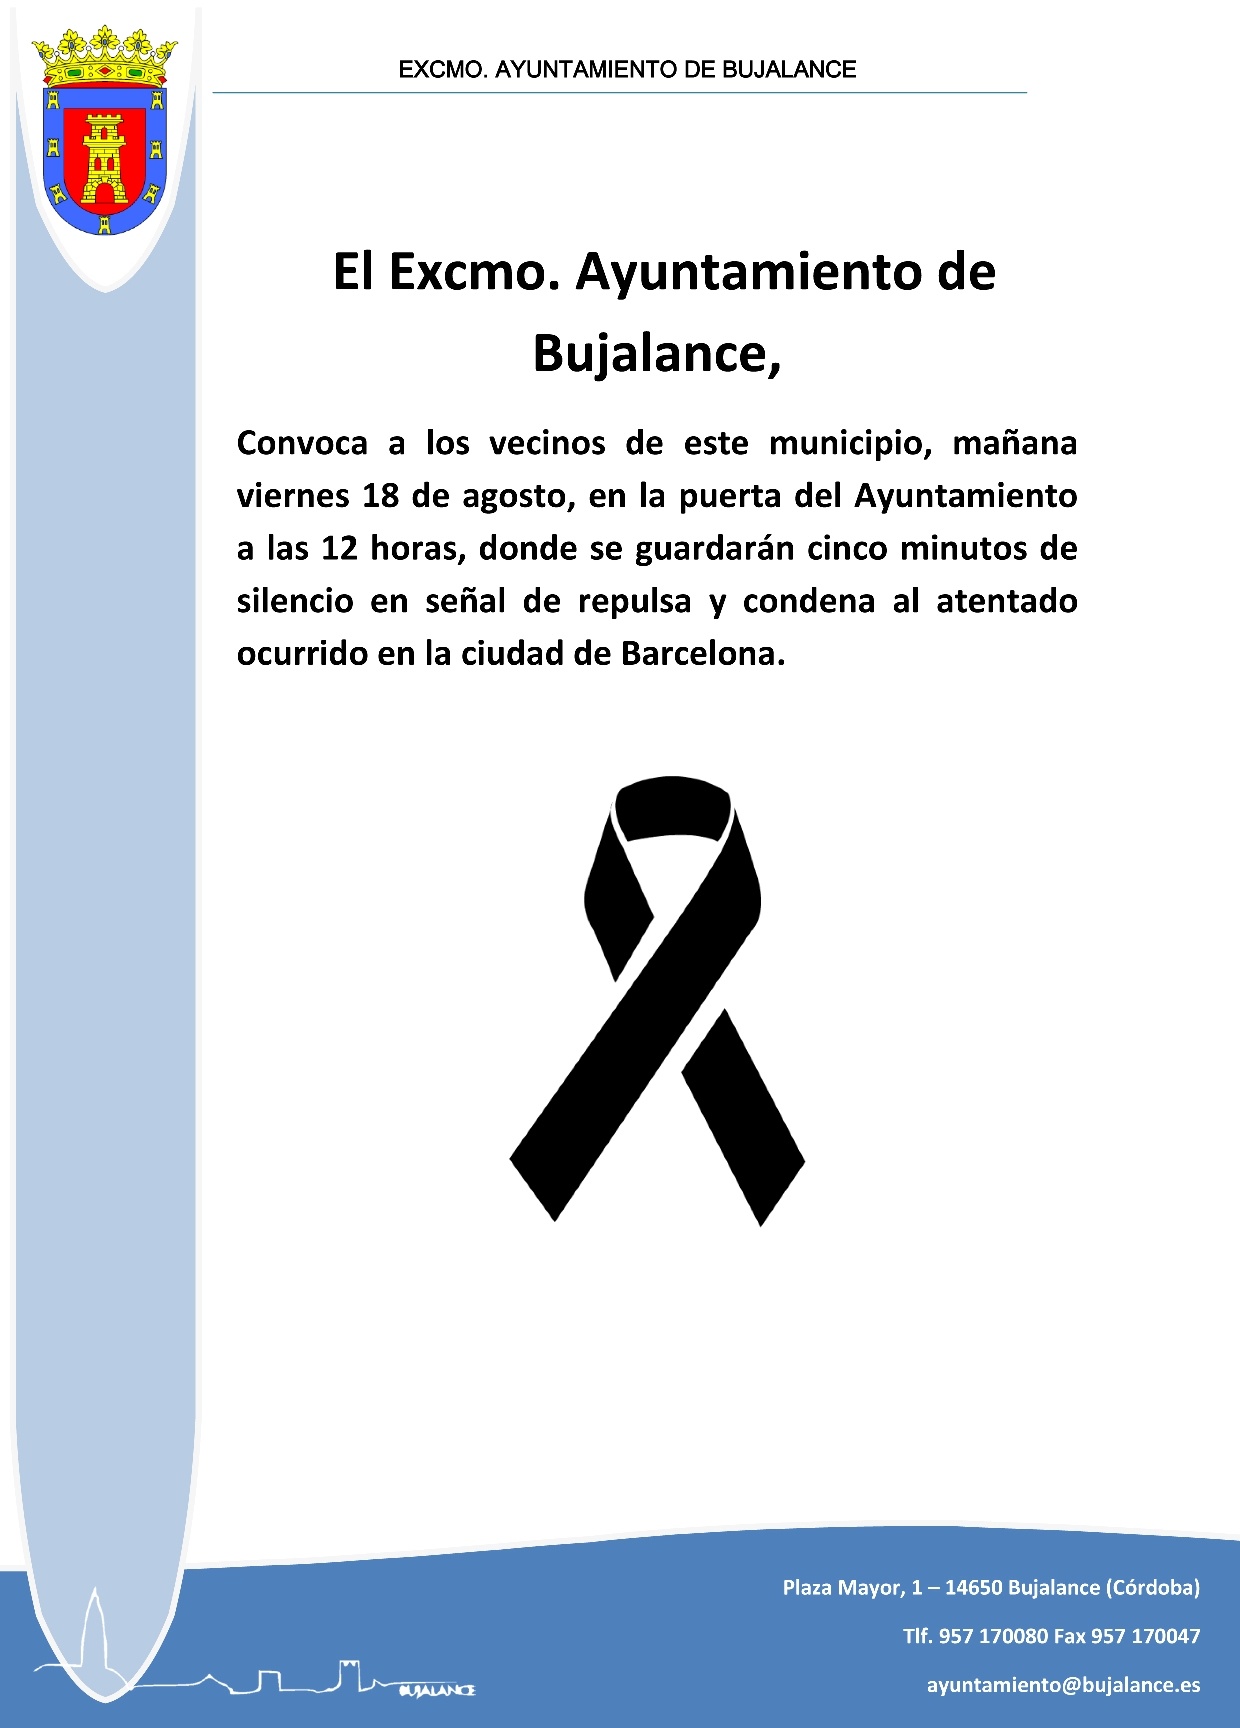 El Ayuntamiento de Bujalance guardará cinco minutos de silencio en señal de repulsa y condena al atentado ocurrido en la ciudad de Barcelona y en solidaridad con las víctimas del mismo 1